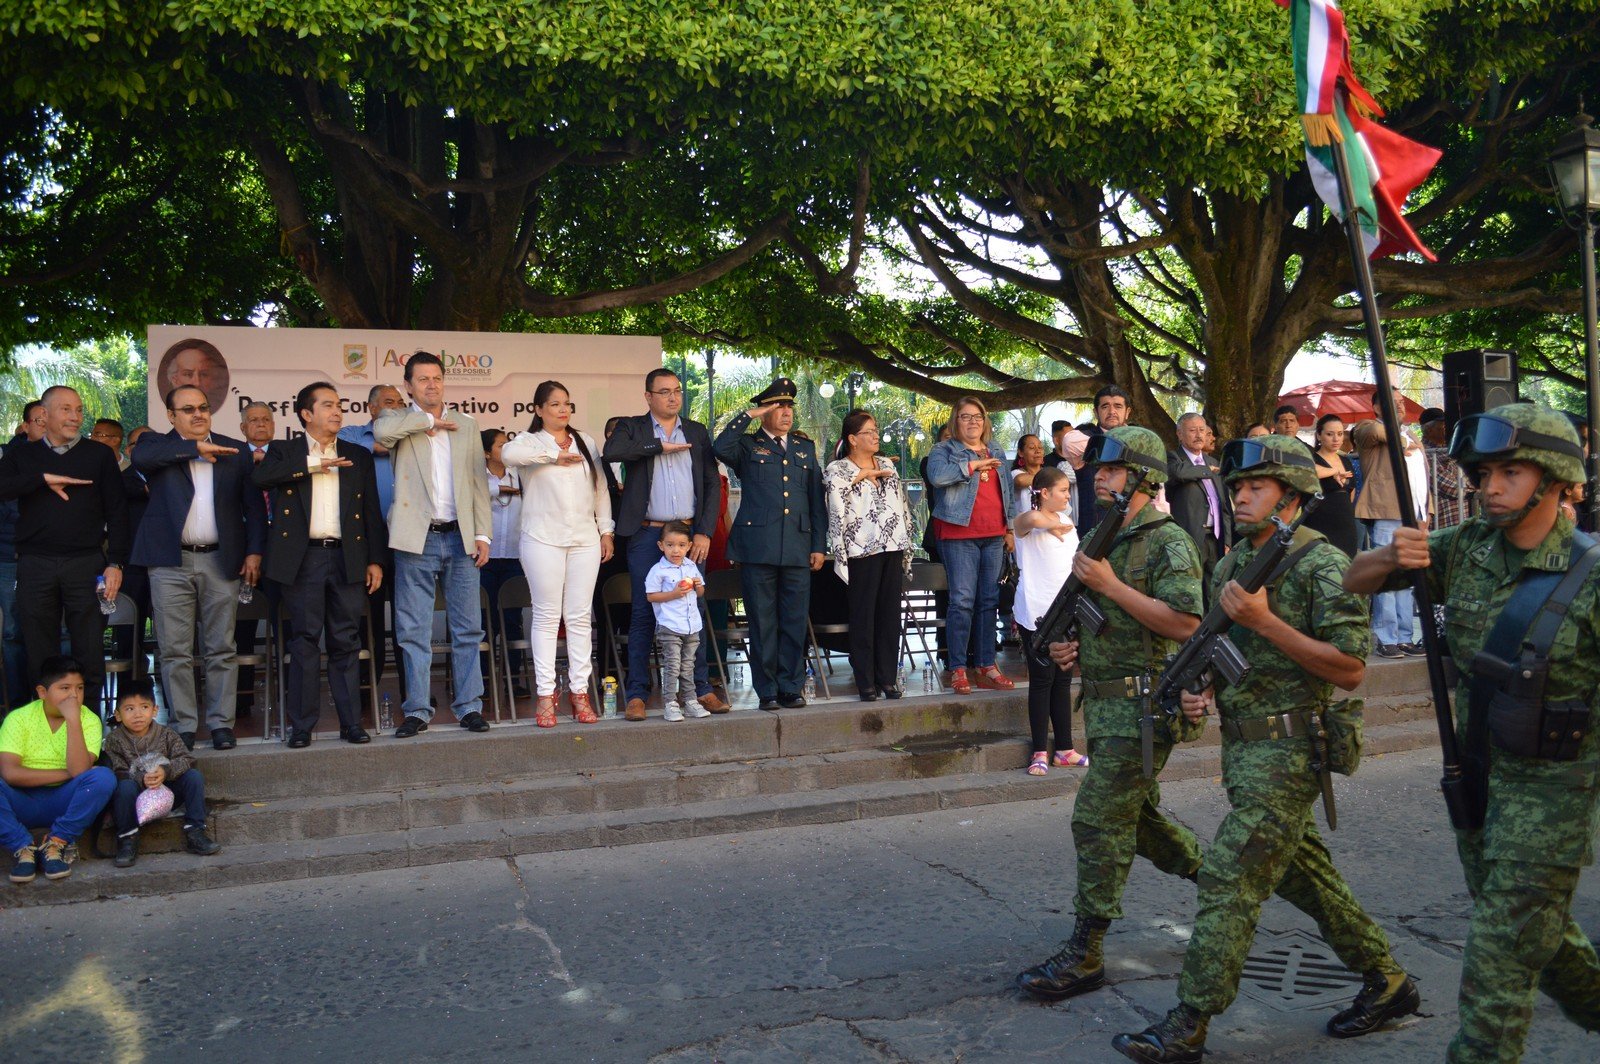 Se realizó un desfile cívico - militar con la participación de 14 instituciones educativas de nivel básico, medio y superior, así como de seguridad pública y el ejército mexicano, el cual pudieron apreciar cientos de familias que se congregaron por las principales calles de Acámbaro.